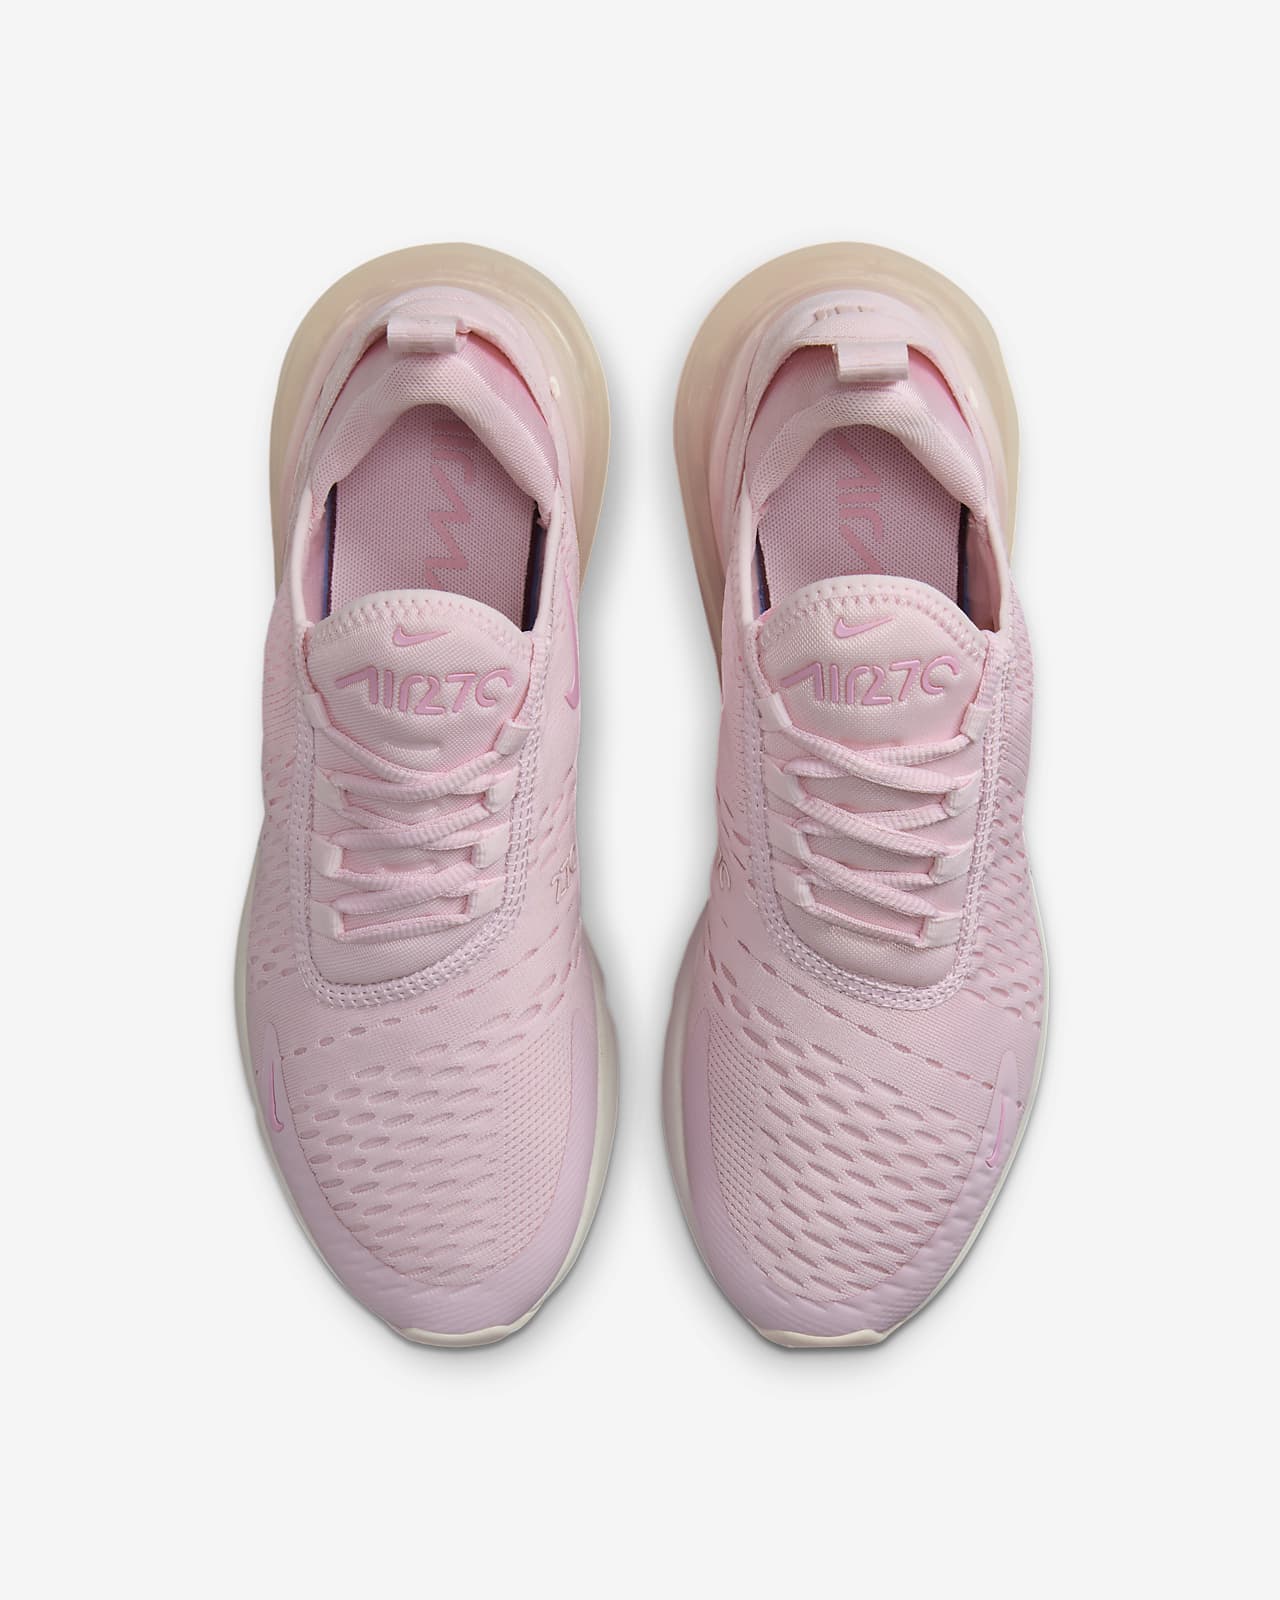  Nike Air Max 270 Women's Shoes (DH3050-100, Summit  White/Desert Sand/Peach Cream/Black) Size 5